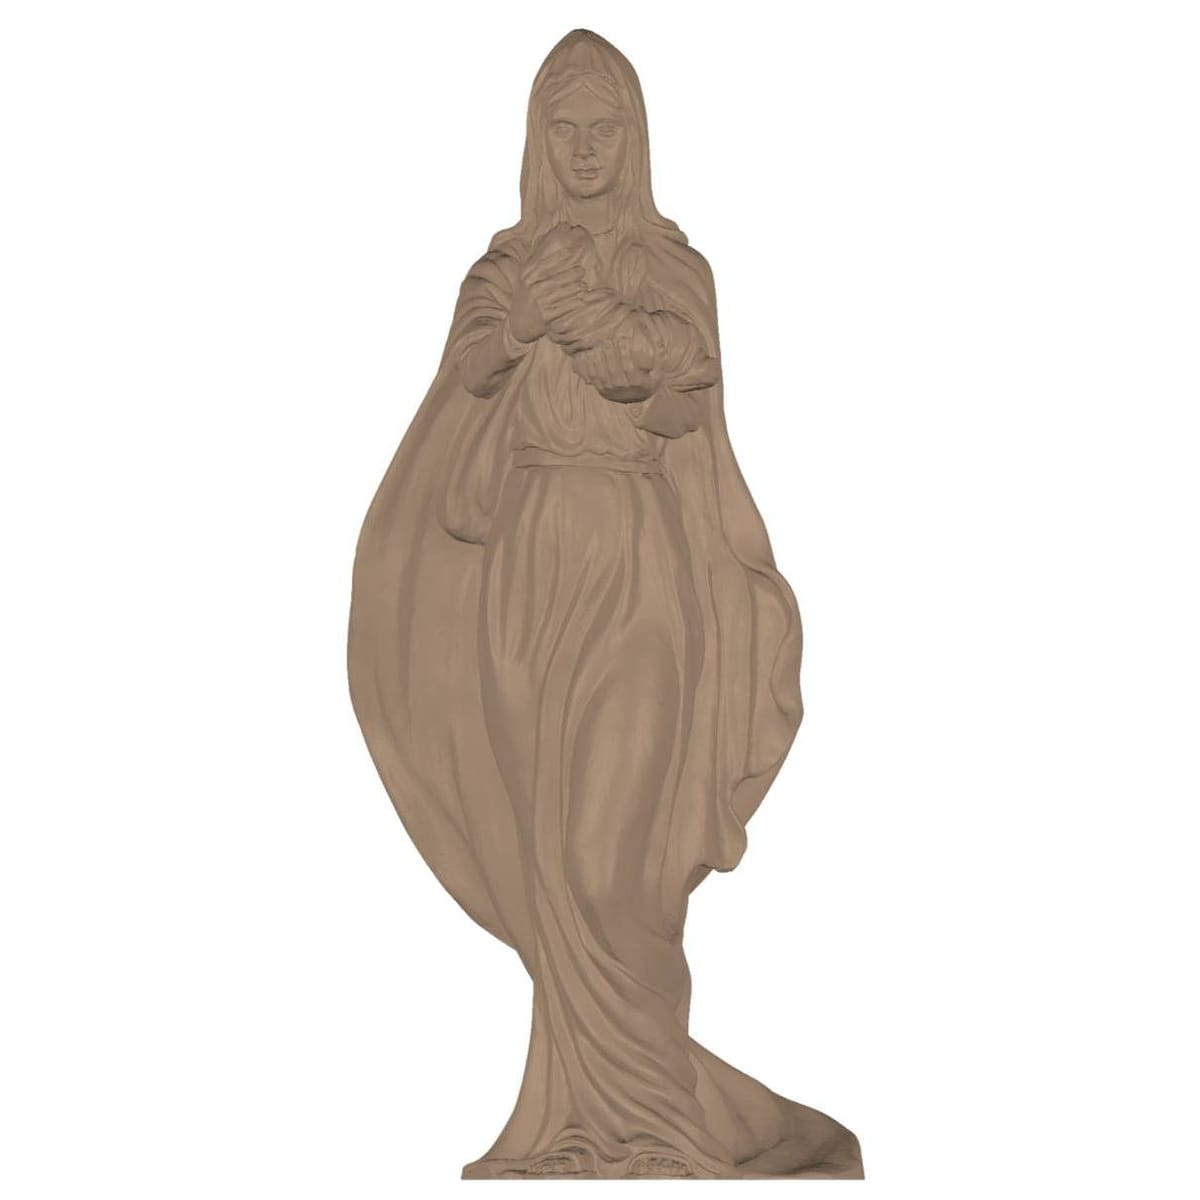 Plus de 3 000 objets destinés au projet de statue de la Vierge Marie sur les pistes de ski